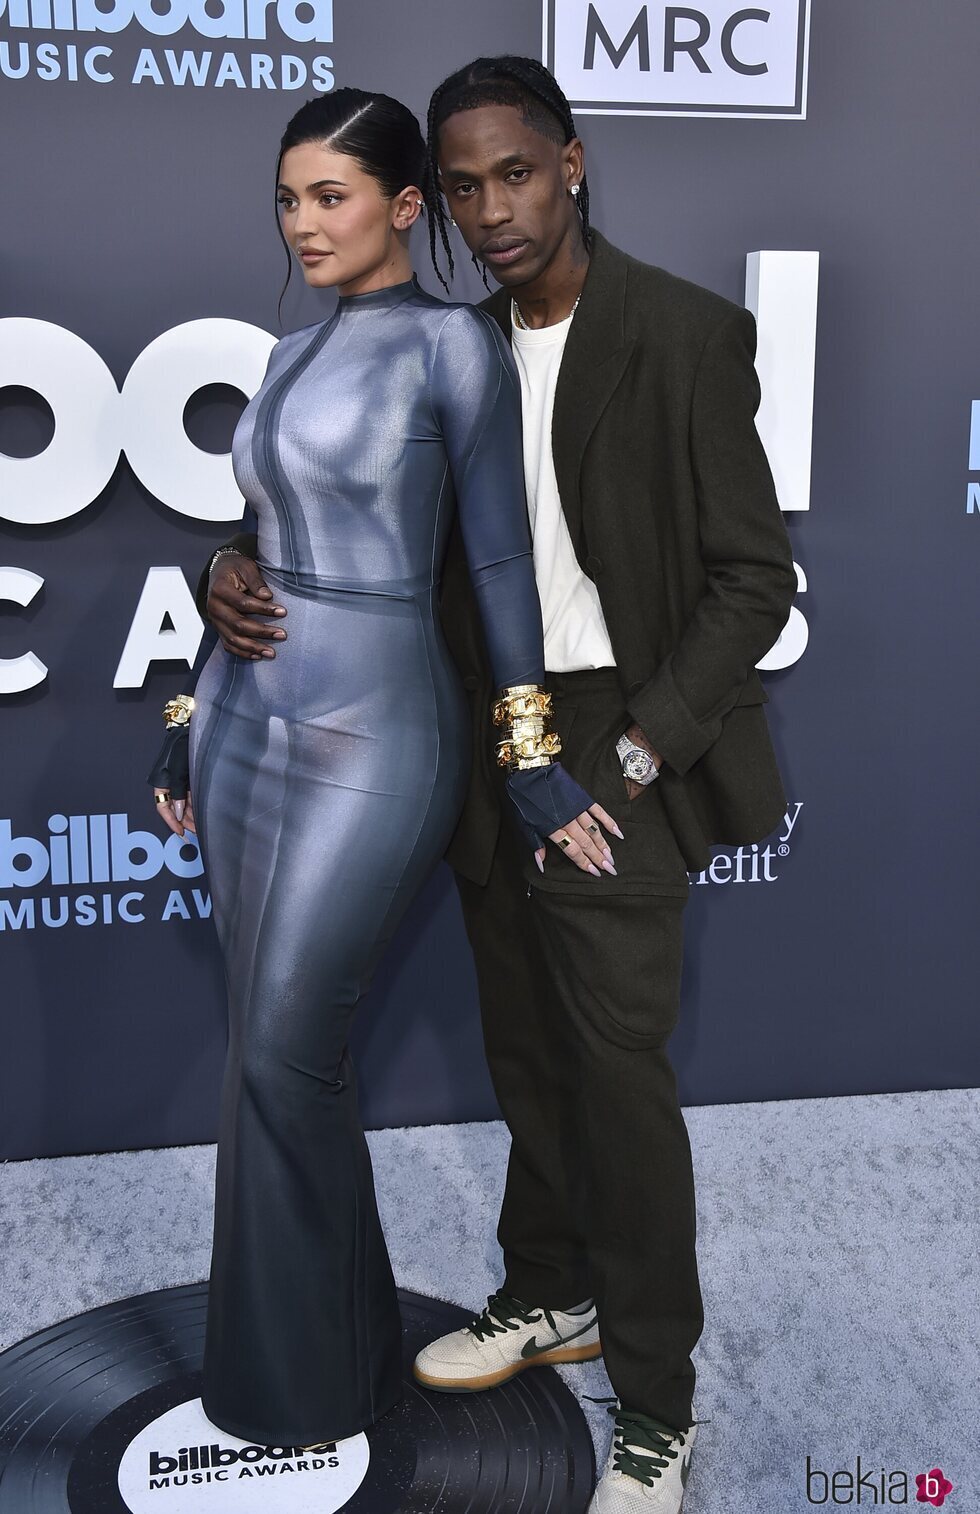 Kylie Jenner y Travis Scott en los Billboard Music Awards 2022